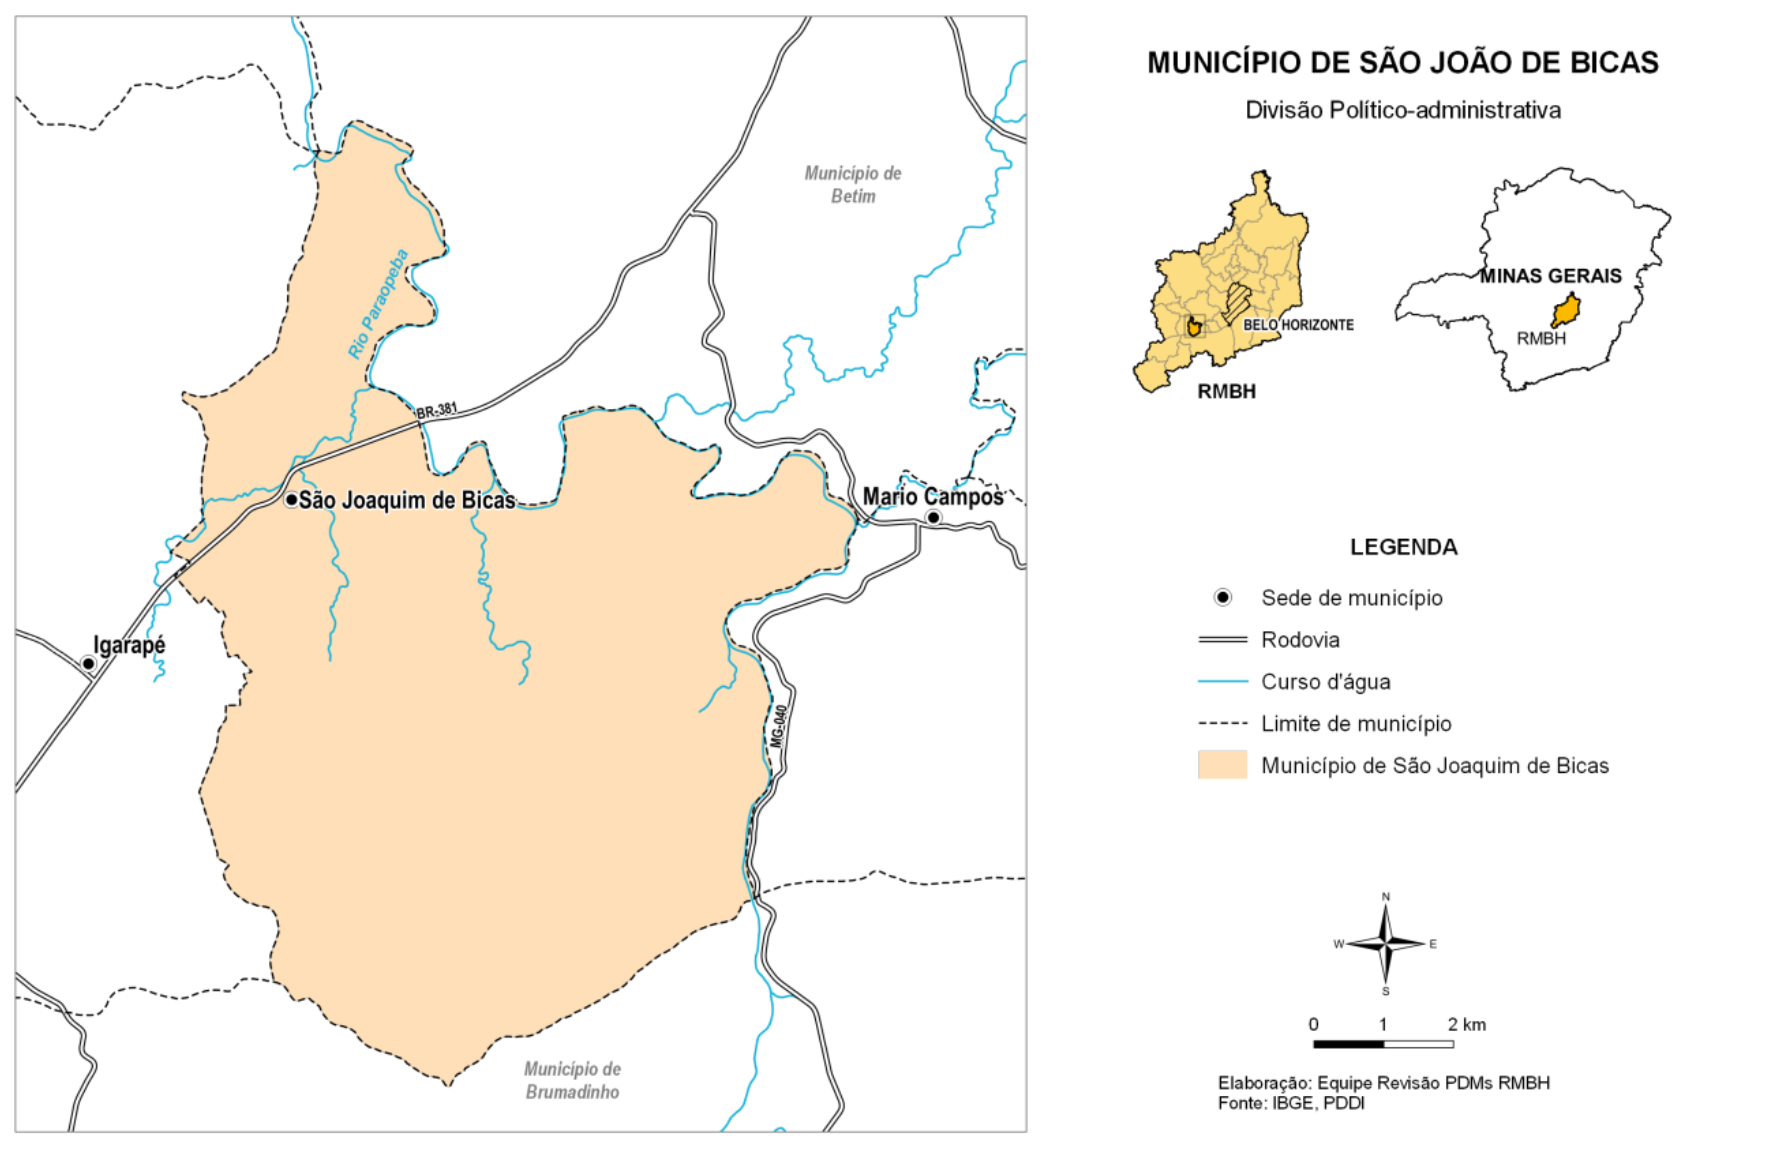 Prefeitura Municipal de Sao Joaquim de Bicas - São Joaquim de